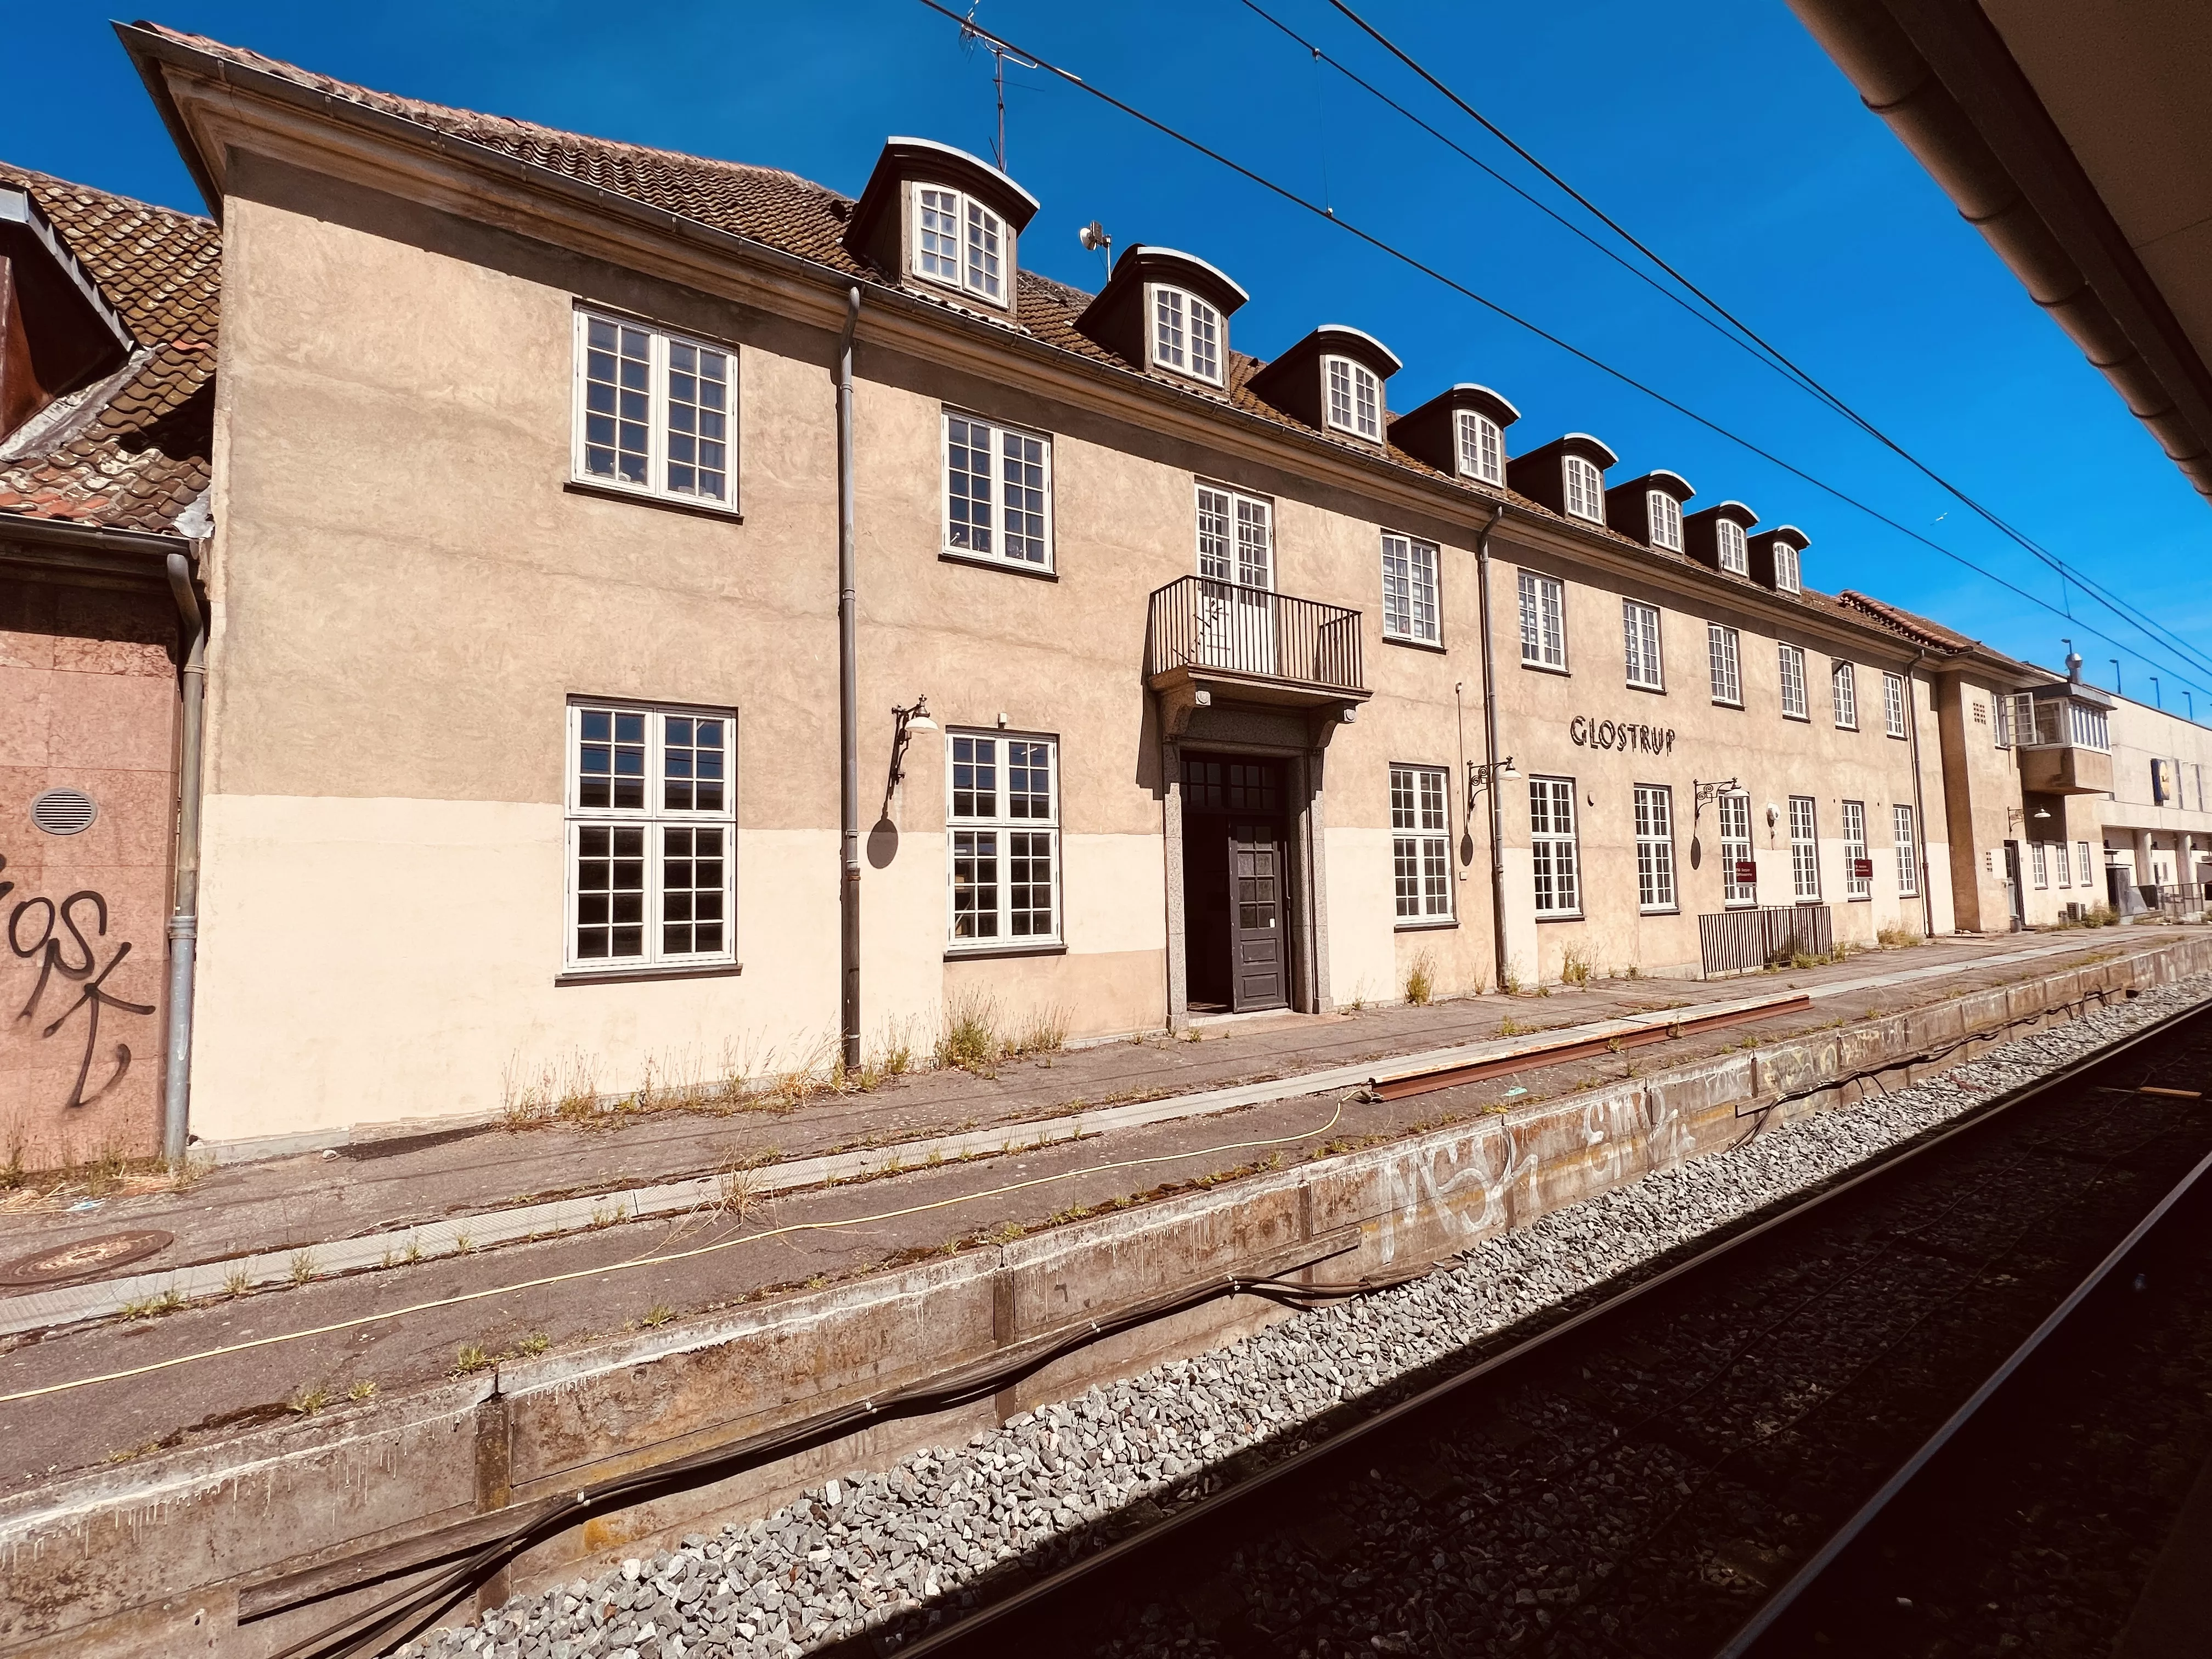 Billede af Glostrup Station.